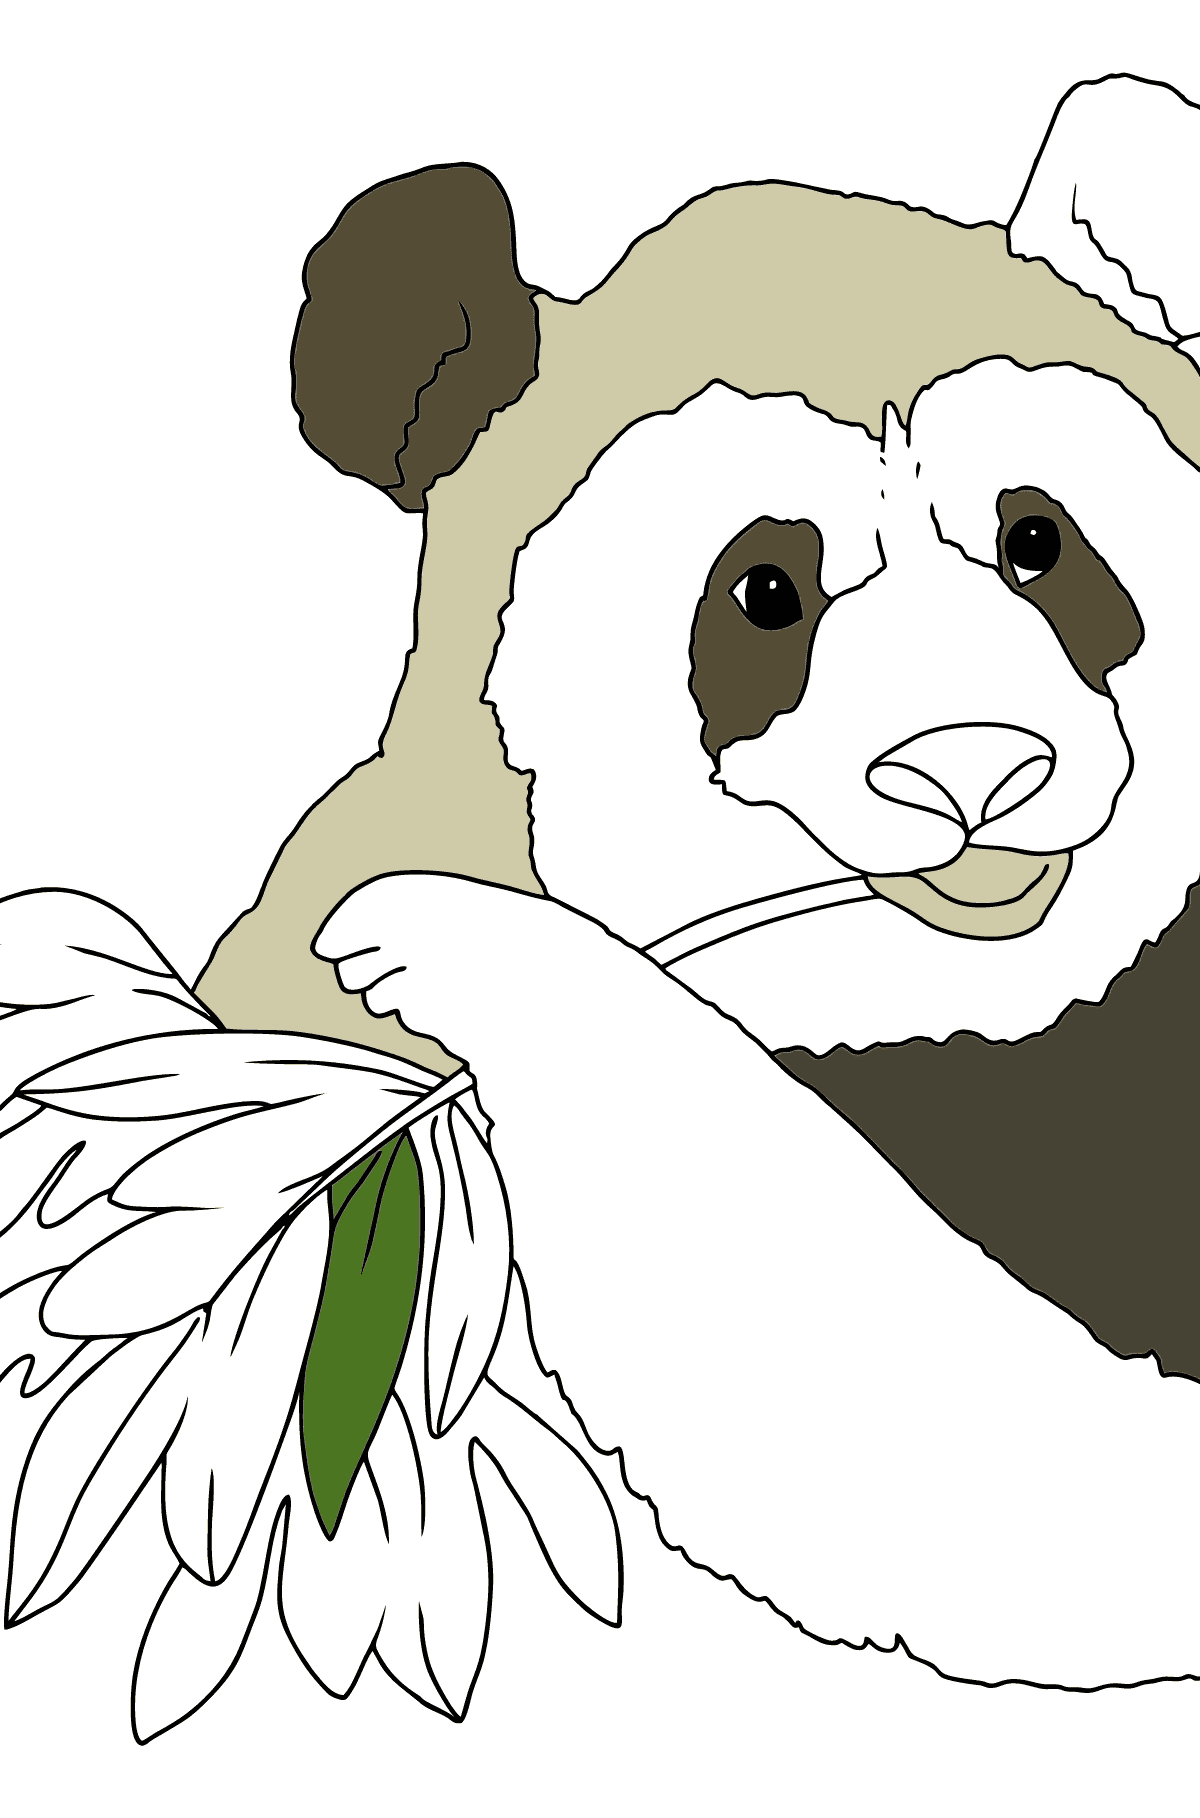 Dibujo para Colorear - Un Panda Comiendo Hojas de Bambú - Colorear para Niños